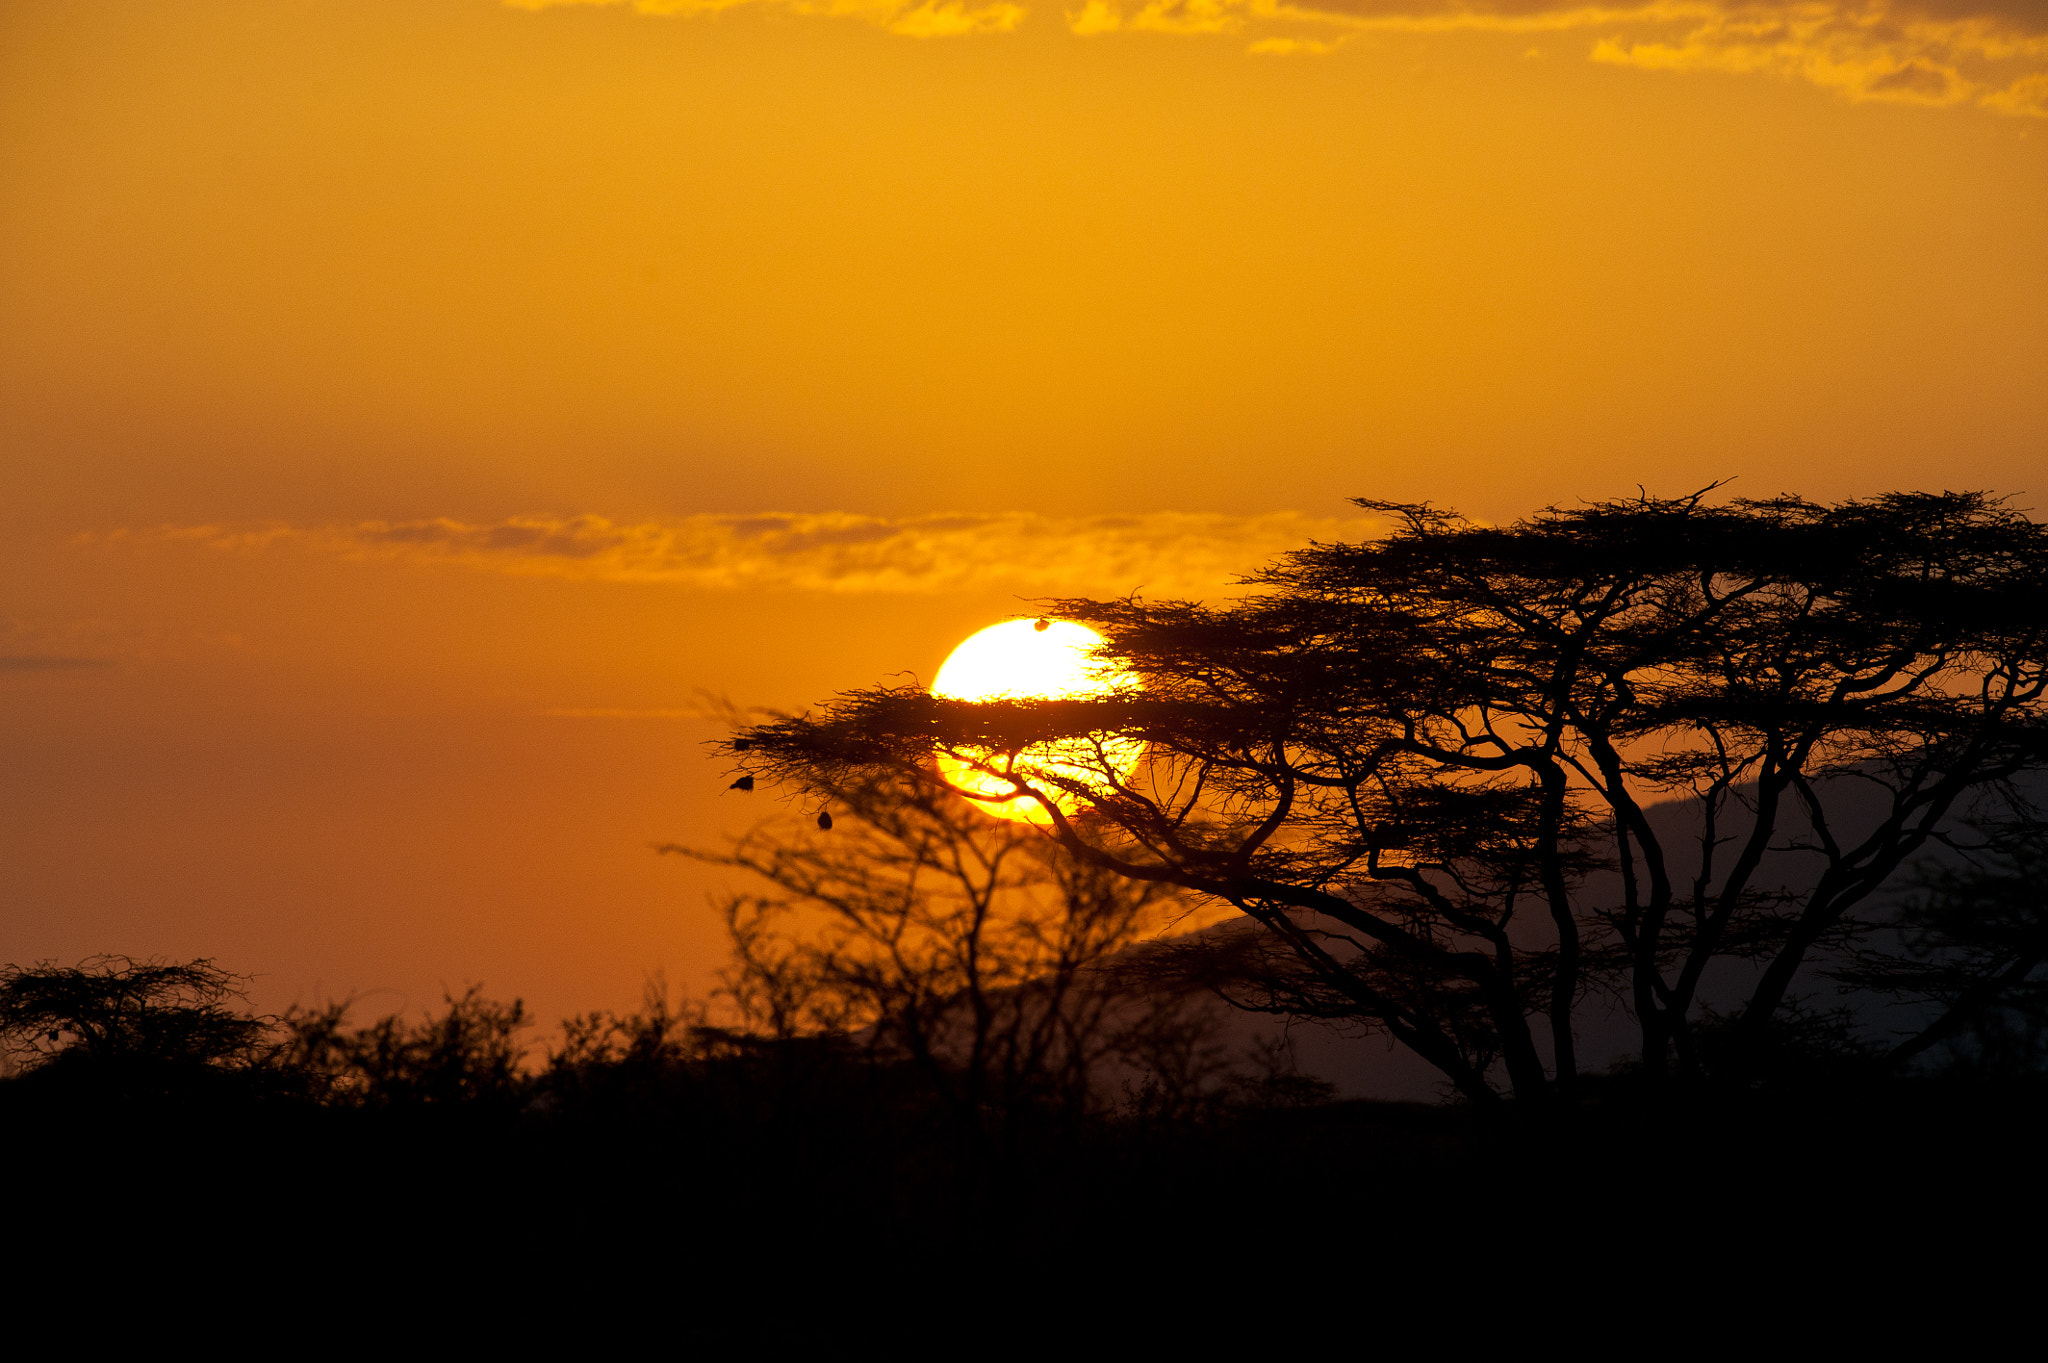 Nikon D3 sample photo. African sunset photography